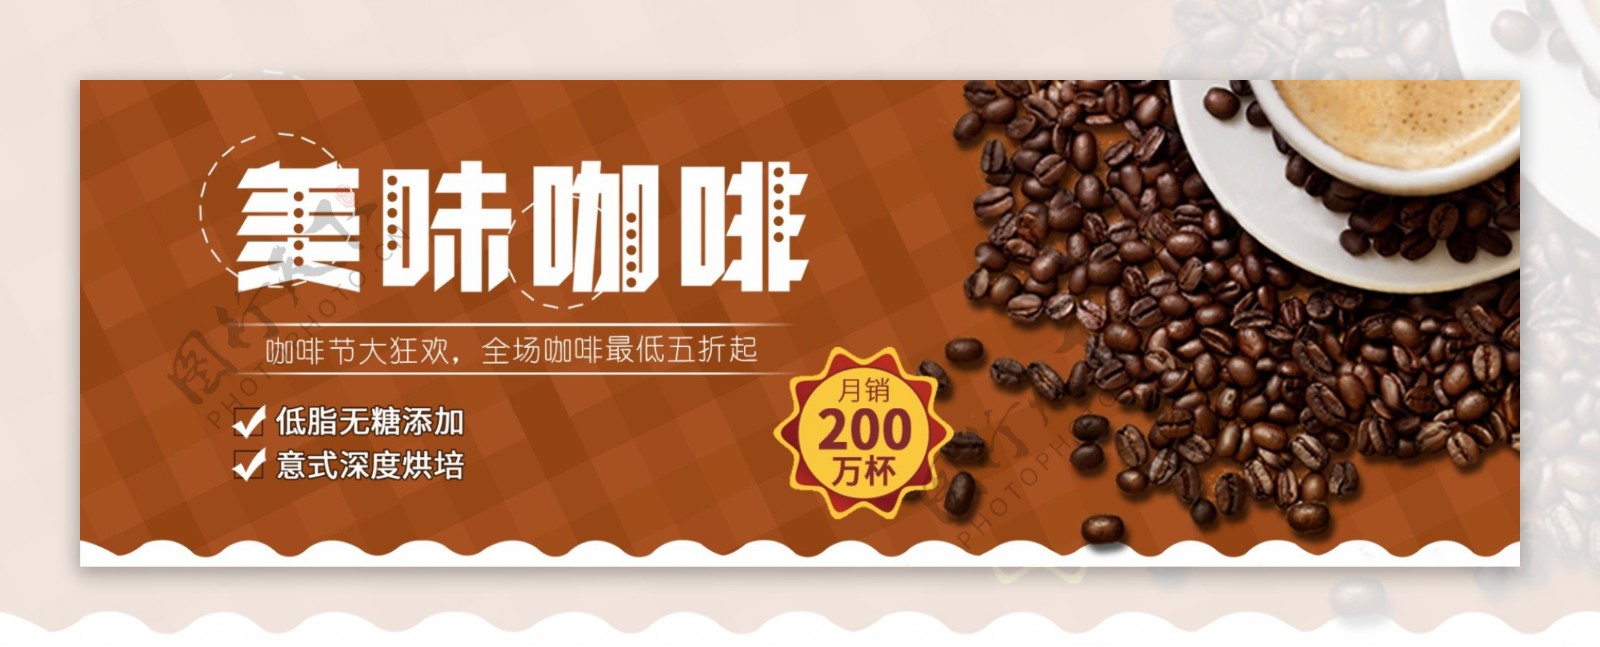 棕色温馨咖啡美食咖啡节电商banner